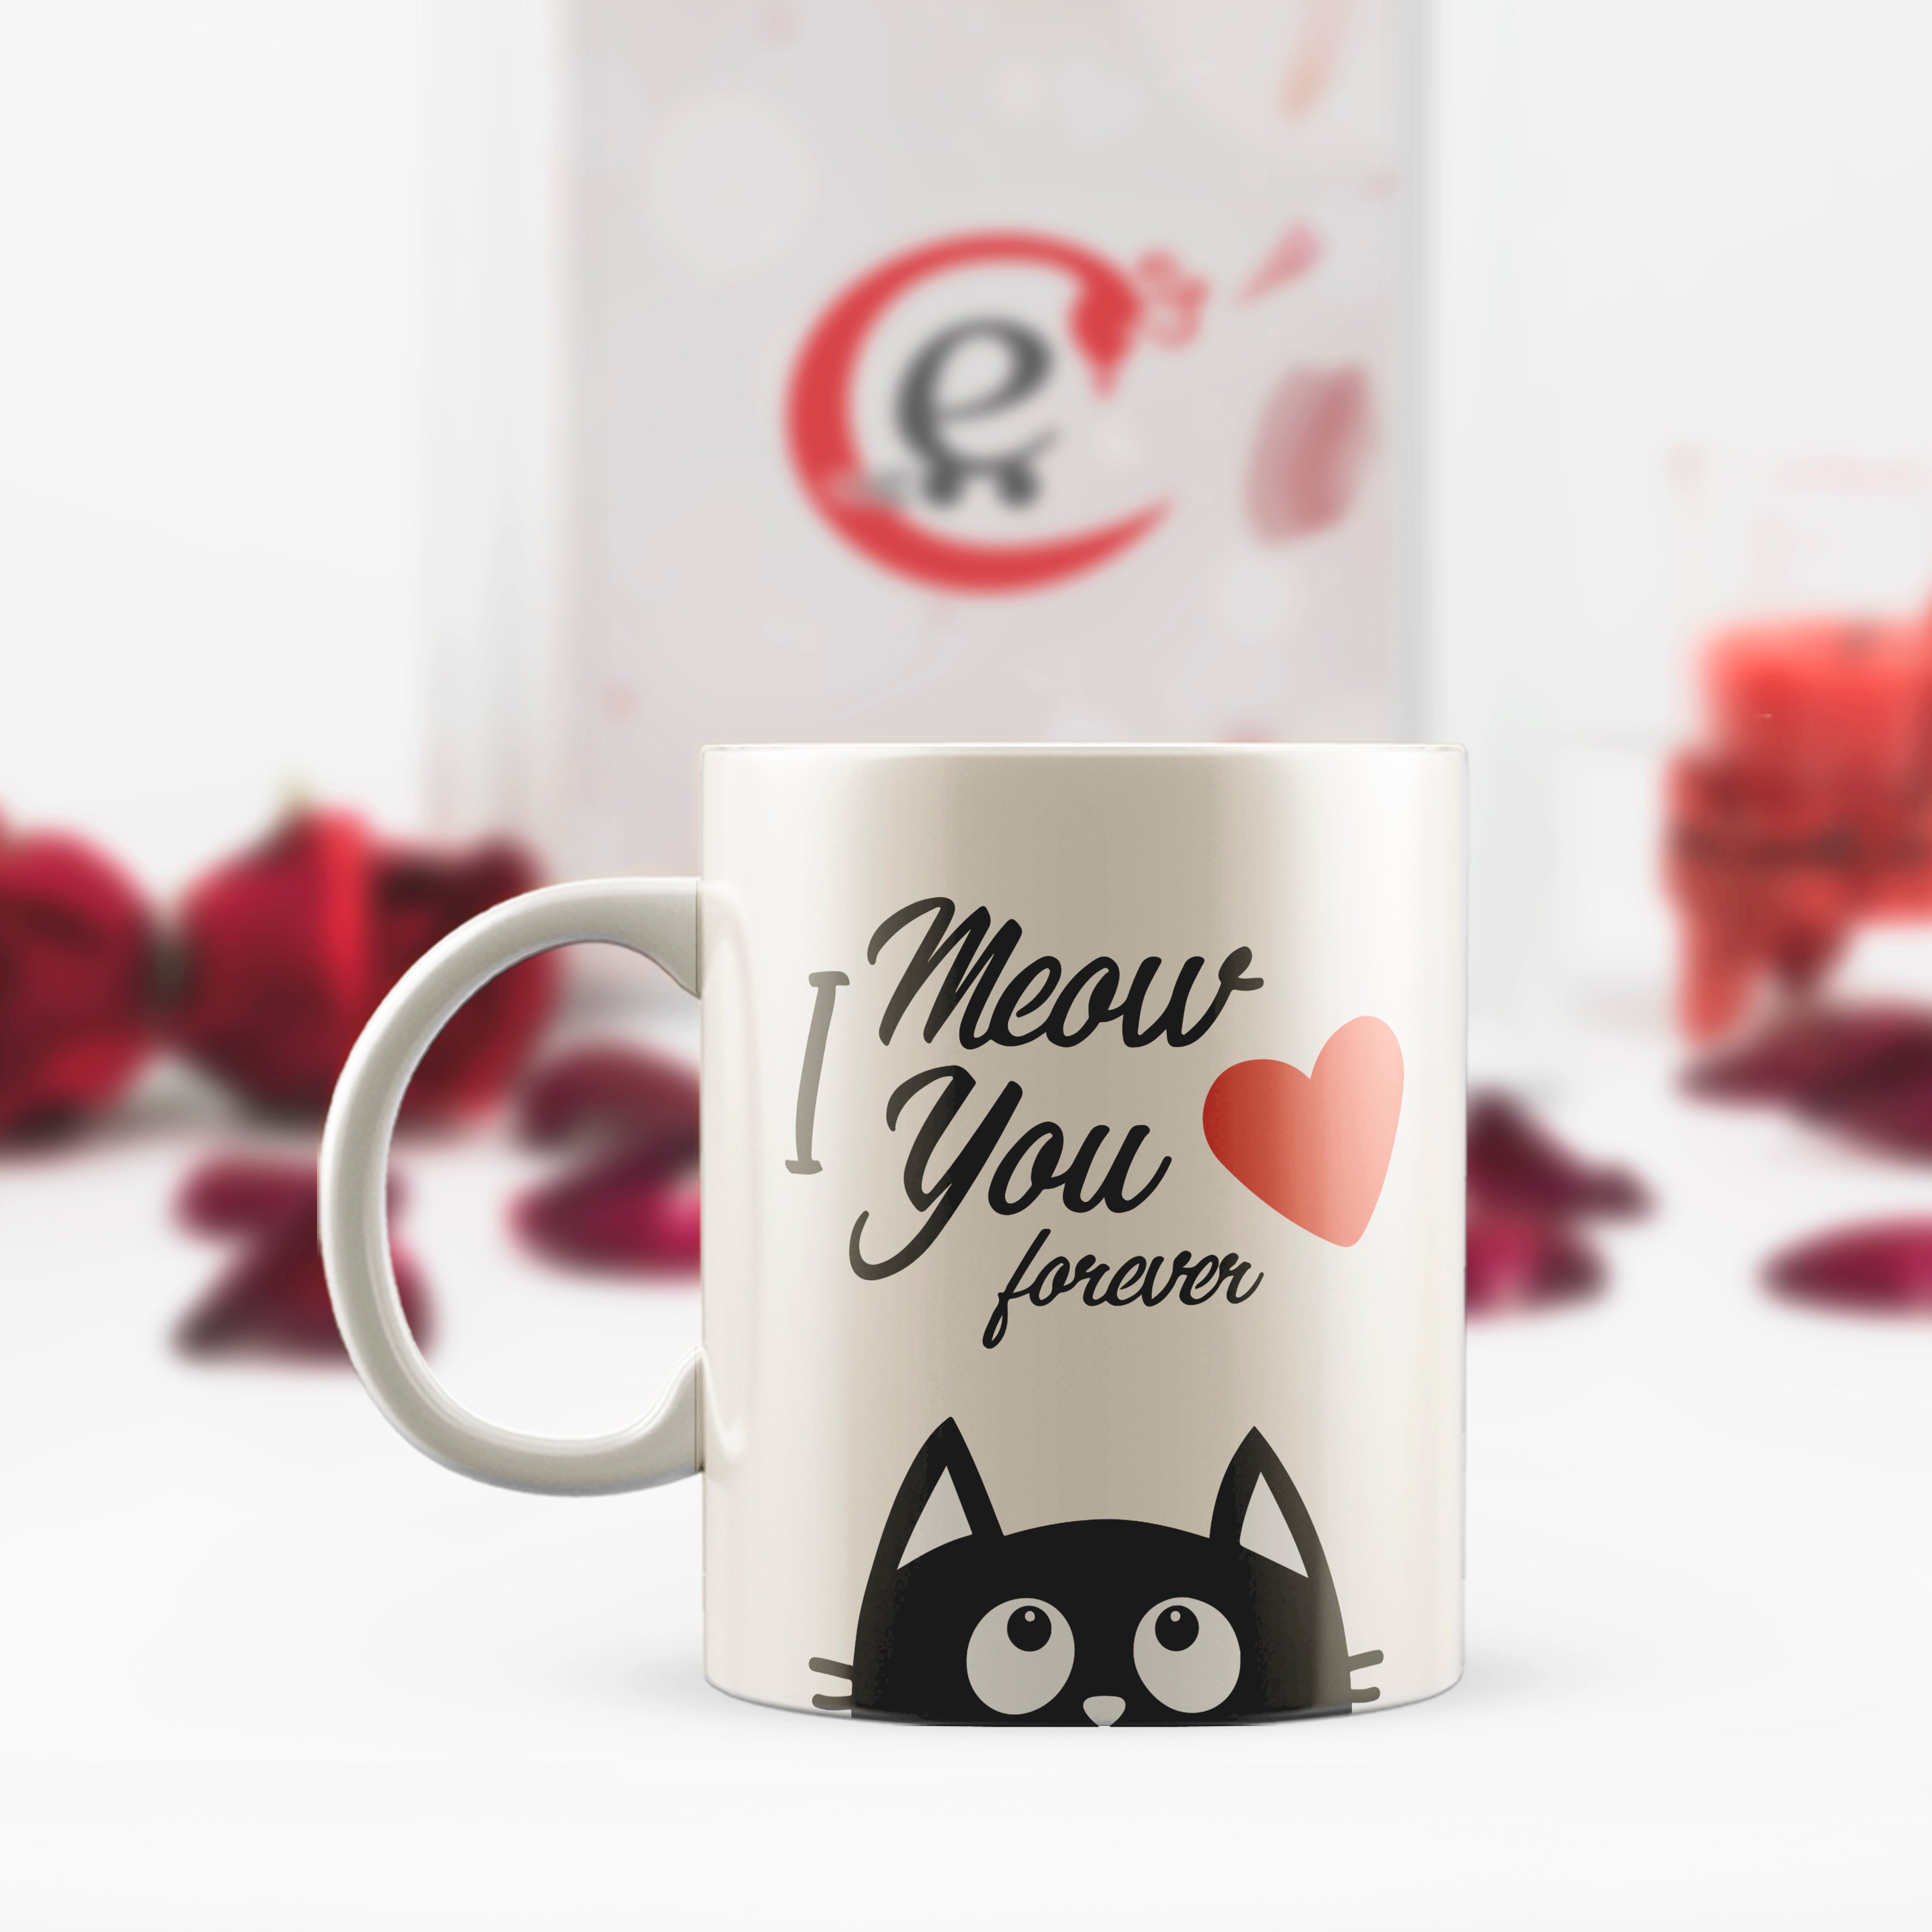 "I Meow you Forever" Valentine Love theme Ceramic Coffee Mug